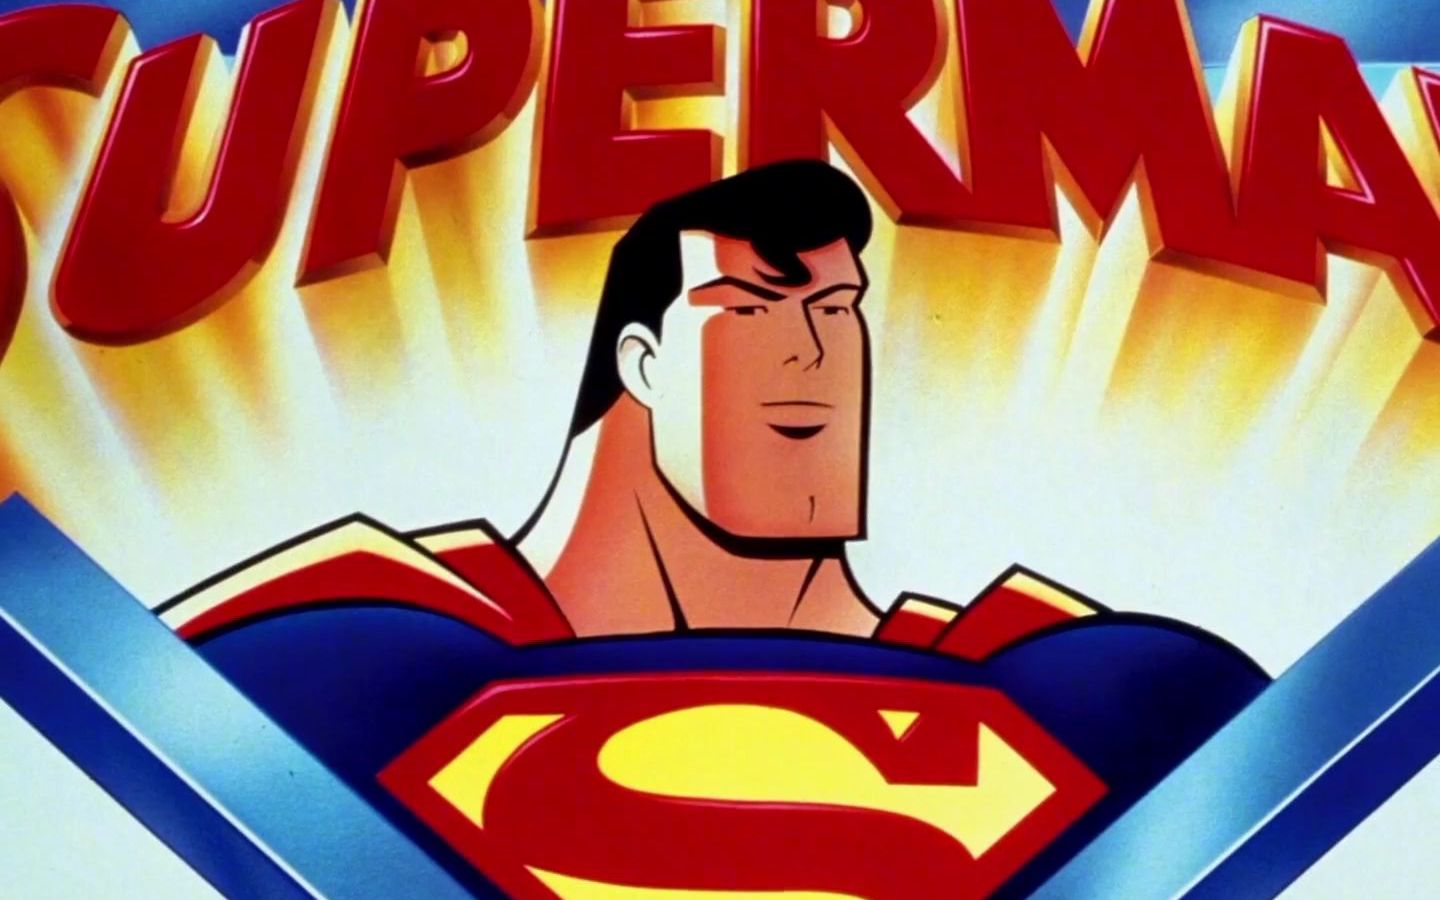 超人1996幕后花絮,英雄的诞生往往是巧合的,就像蝙蝠侠一样